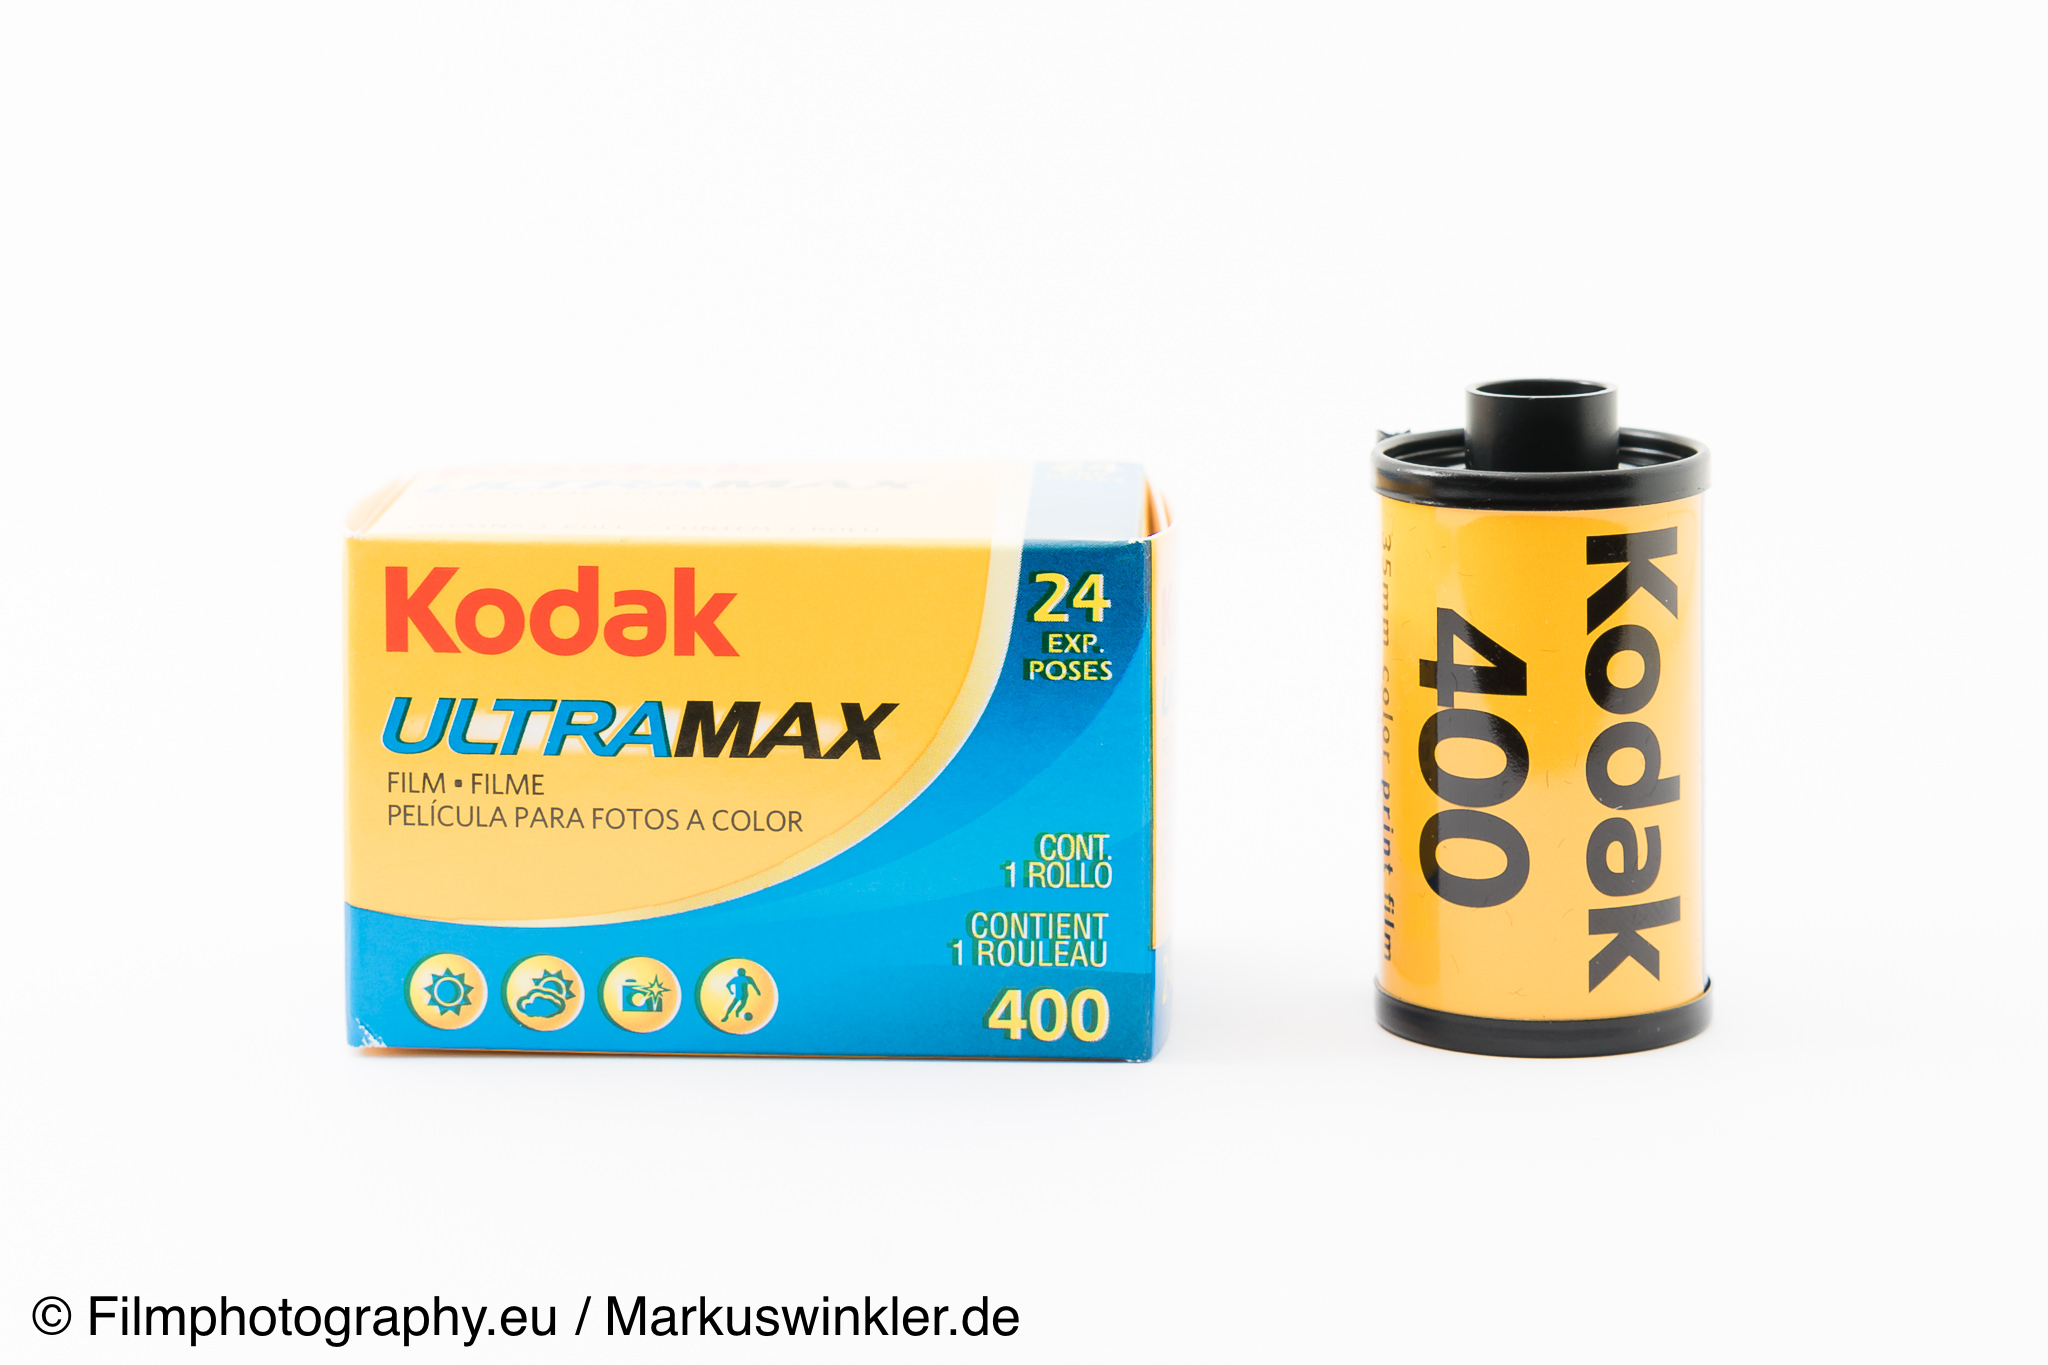 Kodak ultramax 400